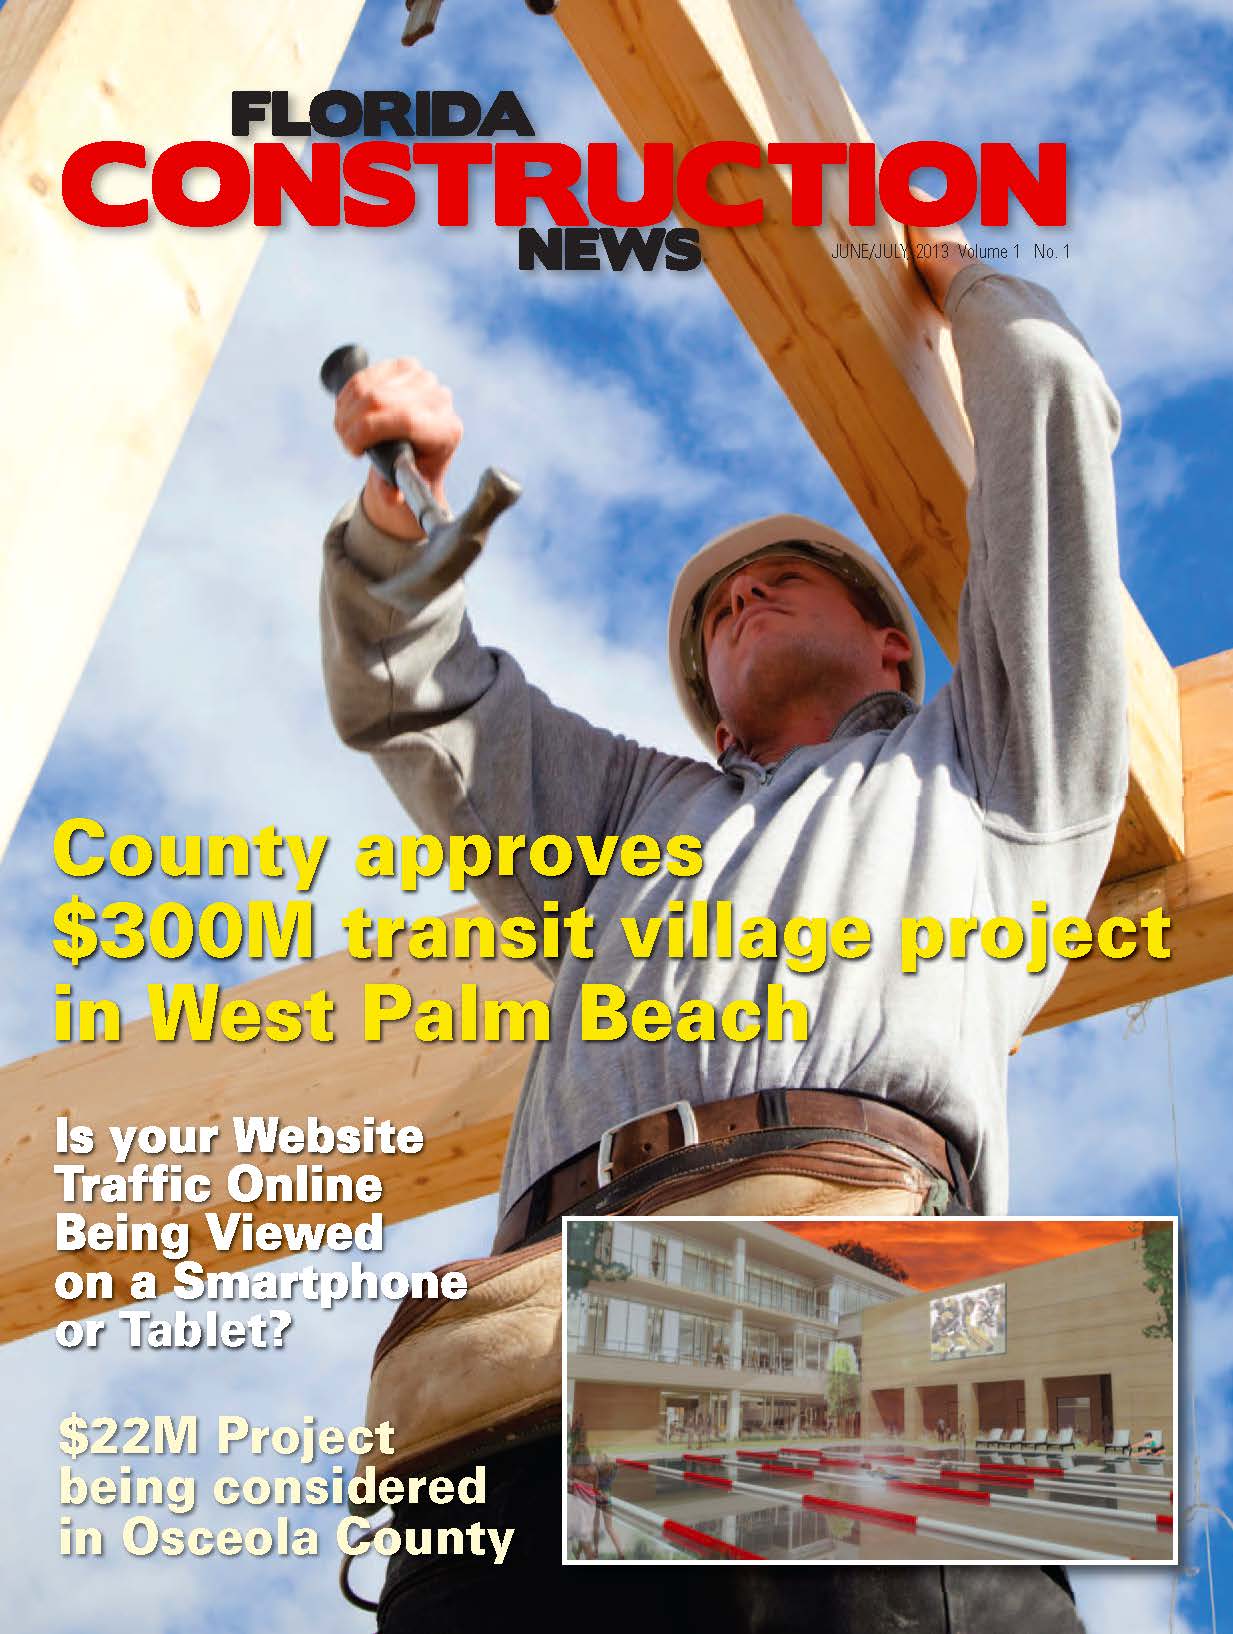 Introducing Florida Construction News